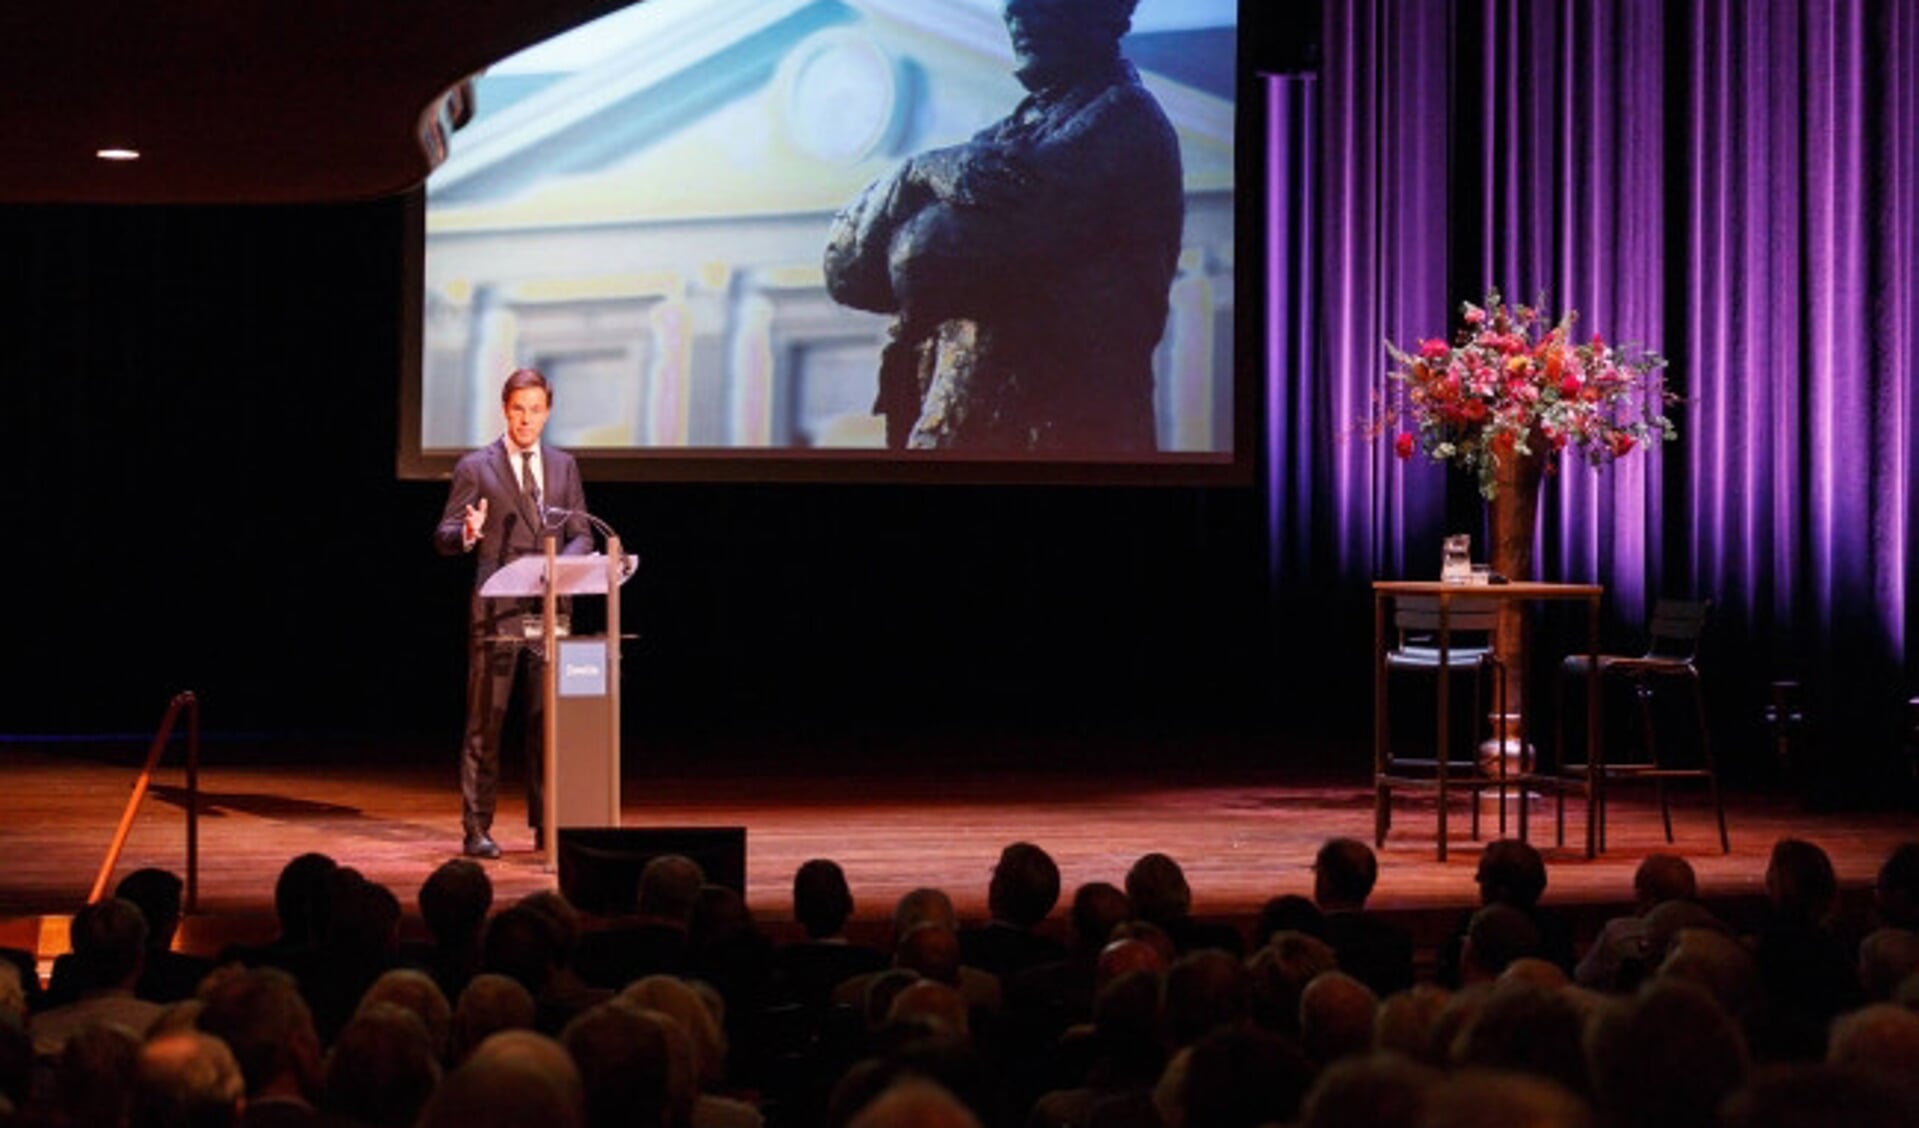  In Schouwburg Odeon in Zwolle heeft Minister-president Rutte de vijftiende Thorbeckelezing gehouden.
De lezing  met als titel ‘De minister-president: een aanbouw aan het huis van Thorbecke’ wordt gevolgd door een debat onder leiding van dr. Jan Drentje.

